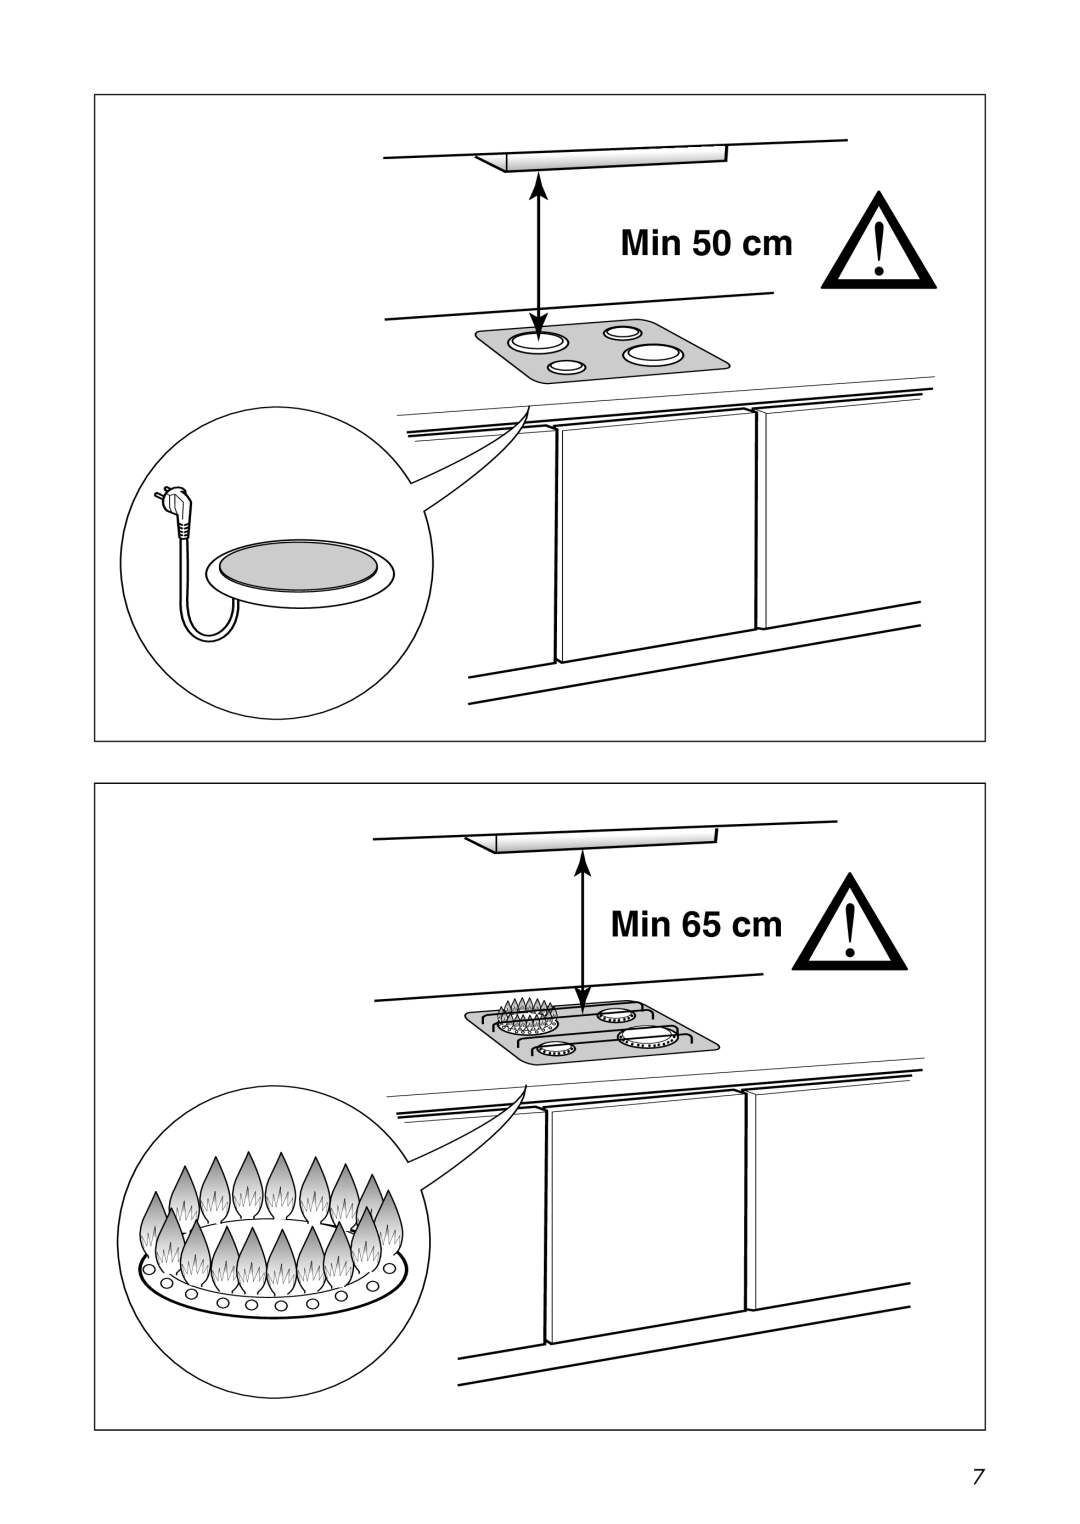 IKEA BF325 manual Min 50 cm, Min 65 cm 